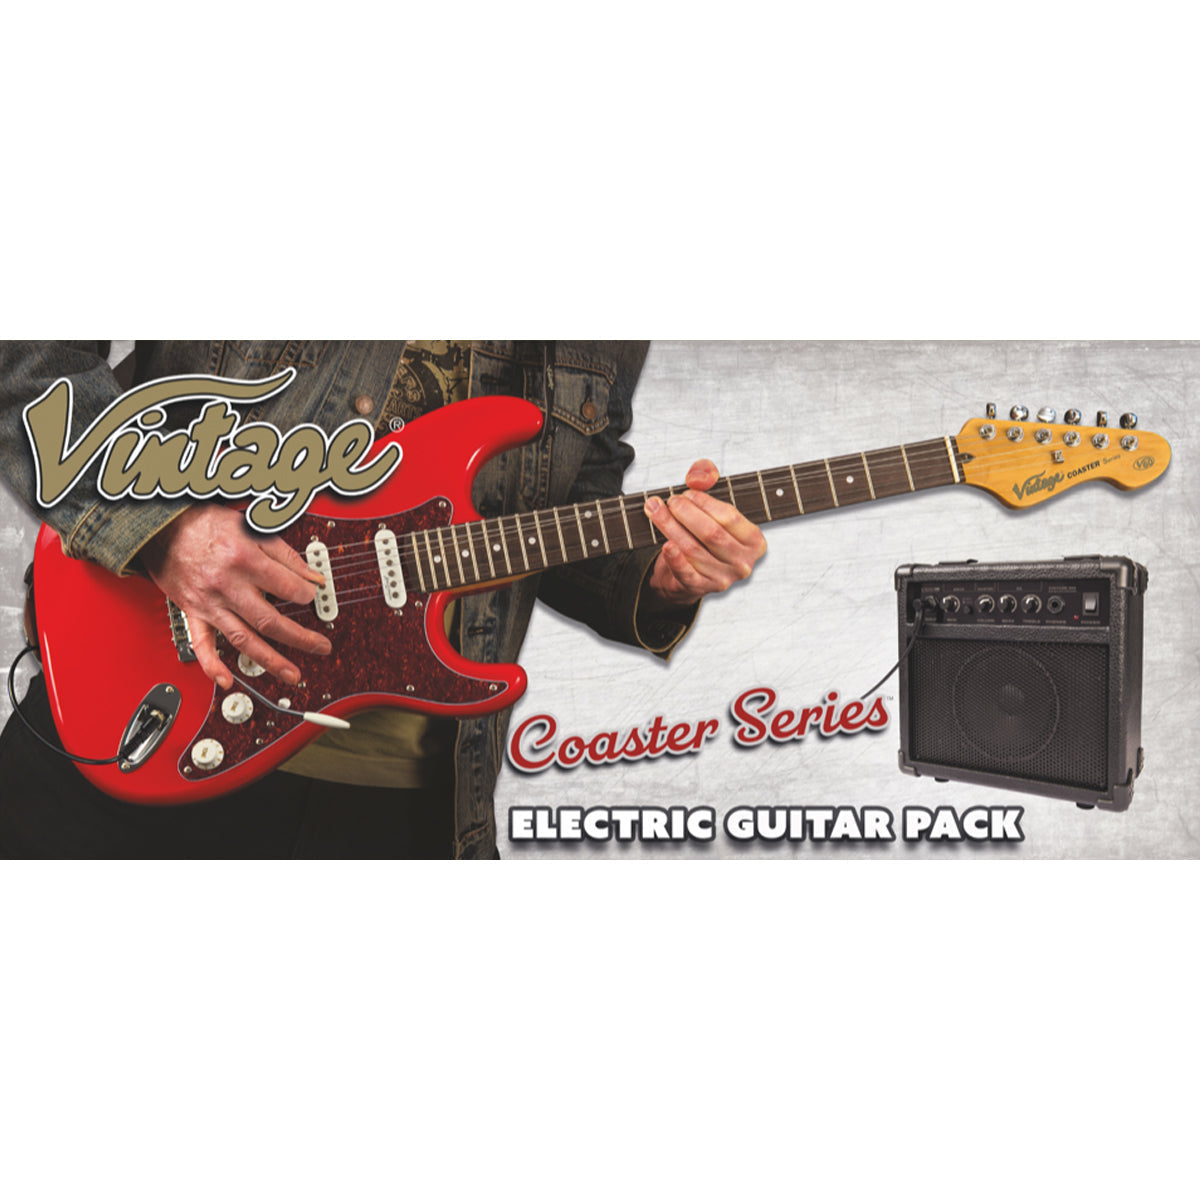 Vintage V60 Coaster Series Electric Guitar Pack ~ 3 Tone Sunburst, Electric Guitar for sale at Richards Guitars.